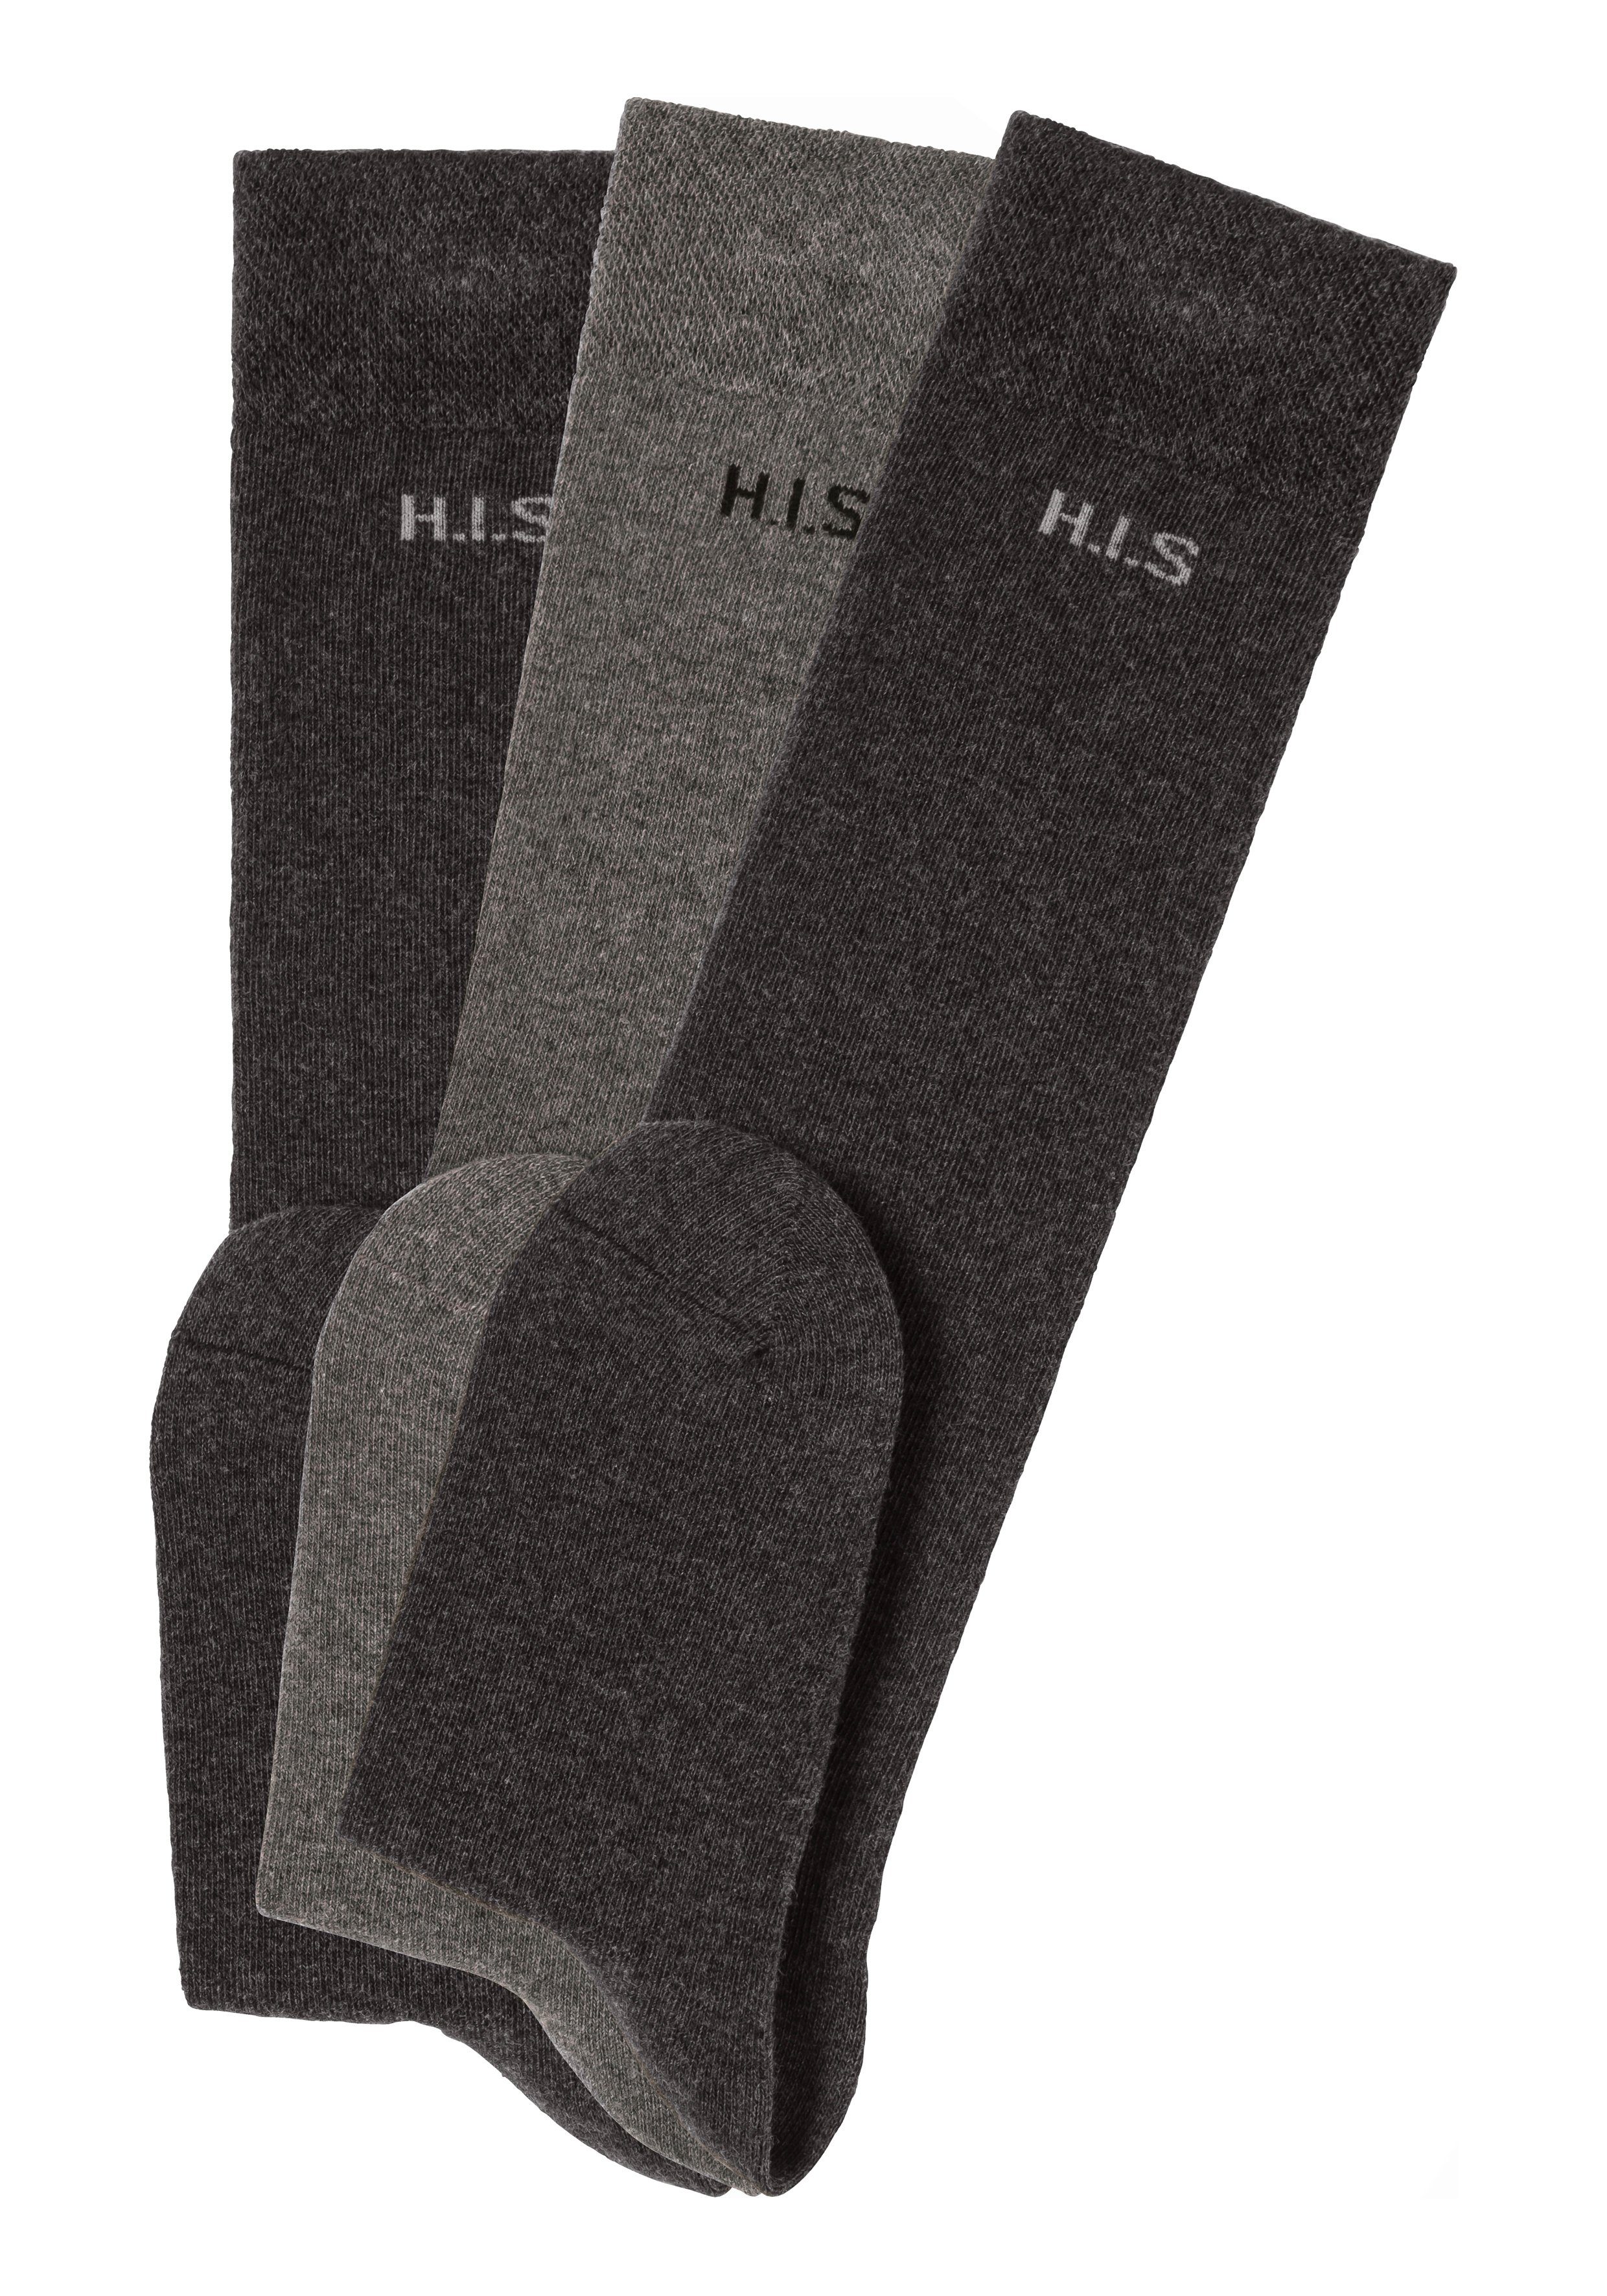 H.I.S Bündchen (3-Paar) anthrazit-grau Kniestrümpfe einschneidendes ohne